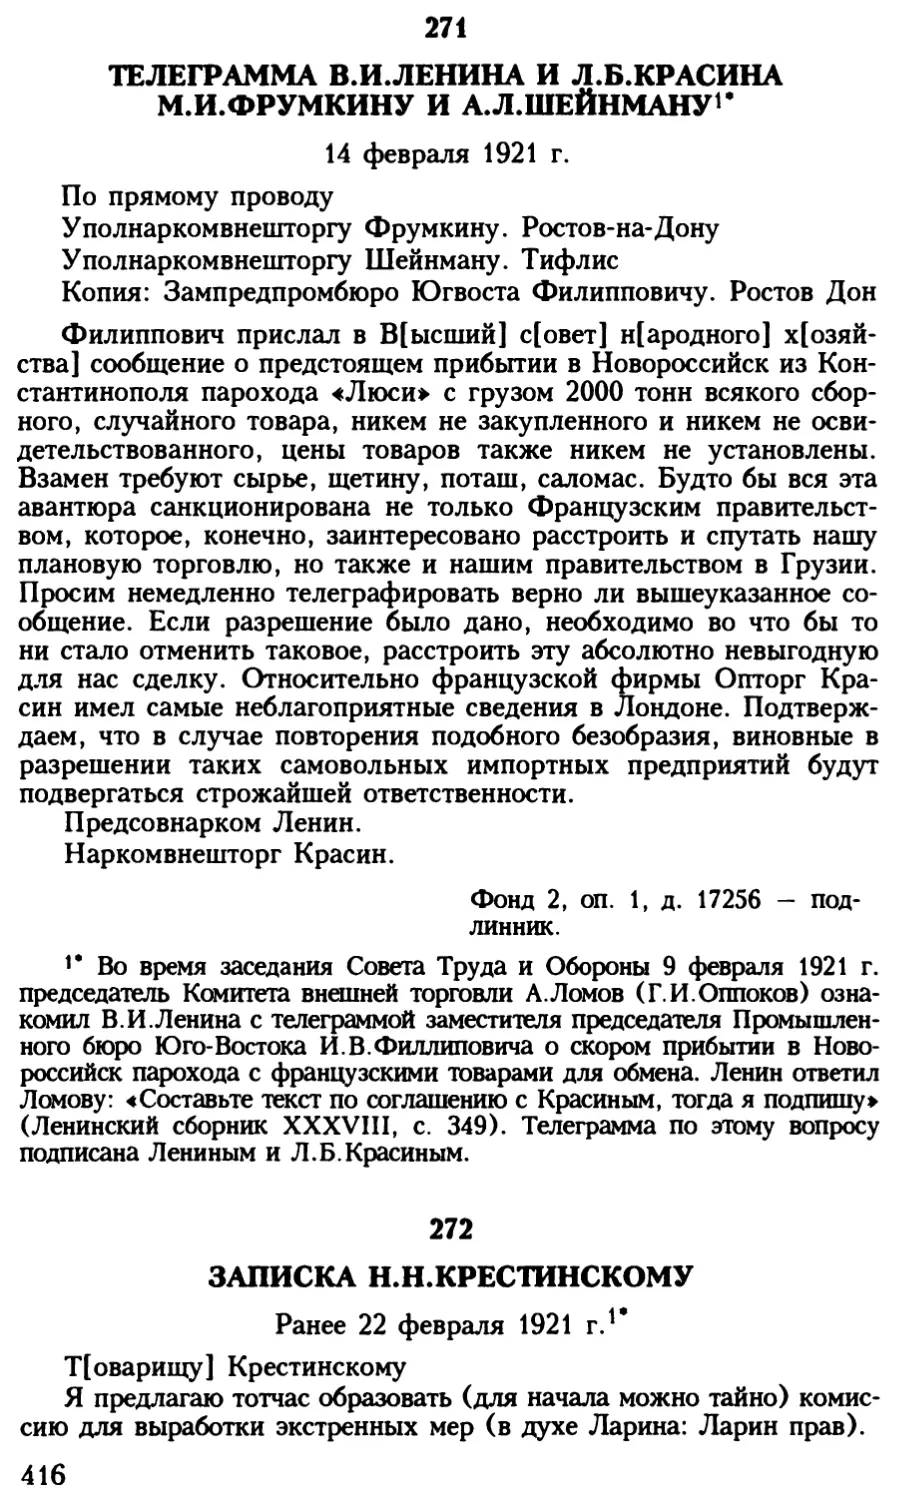 272. Записка Н.Н.Крестинскому. 22 февраля 1921 г